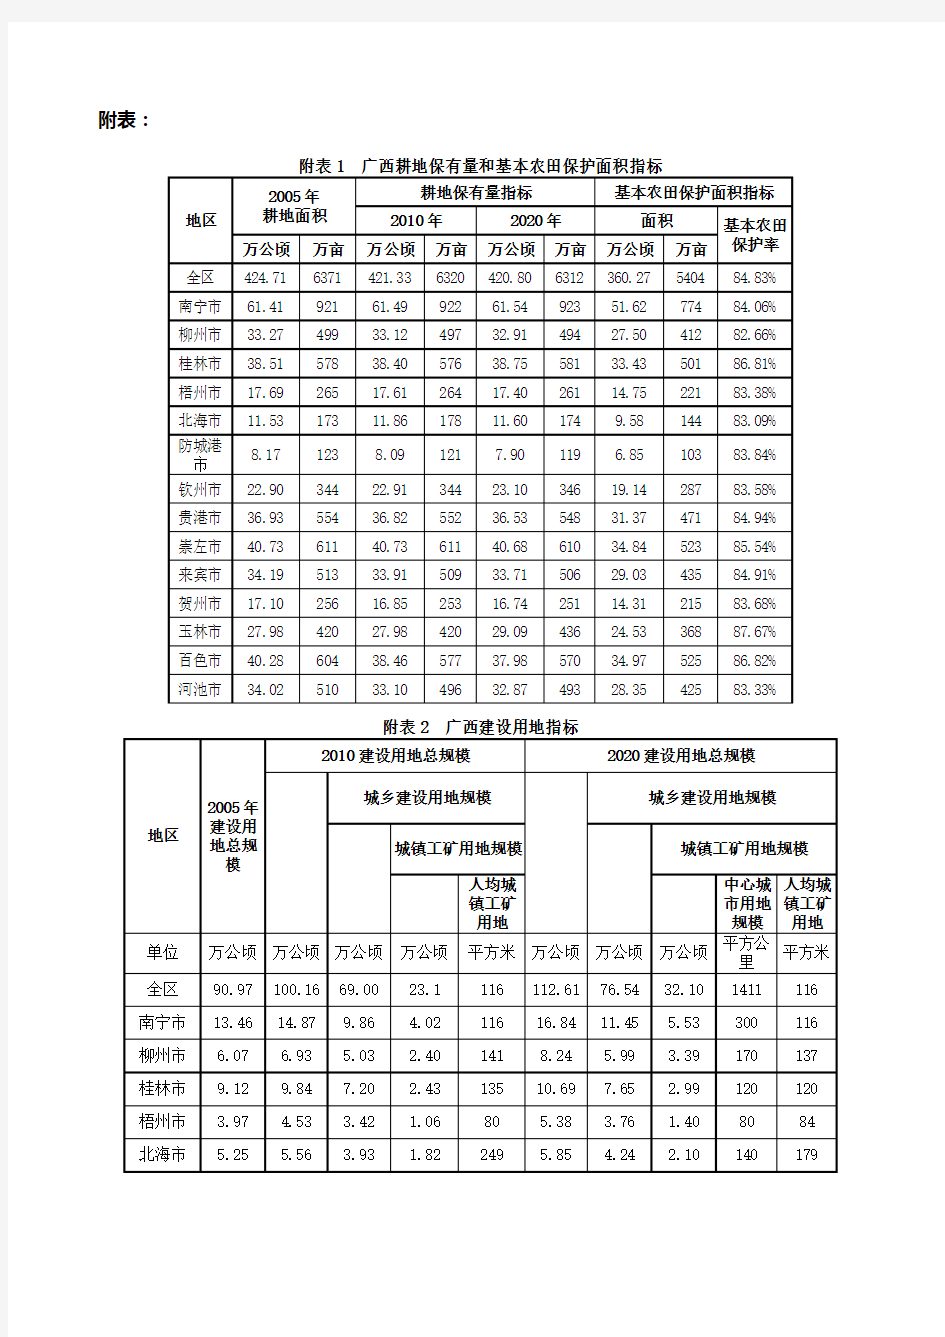 广西壮族自治区土地利用总体规划(2006～2020年)相关附表